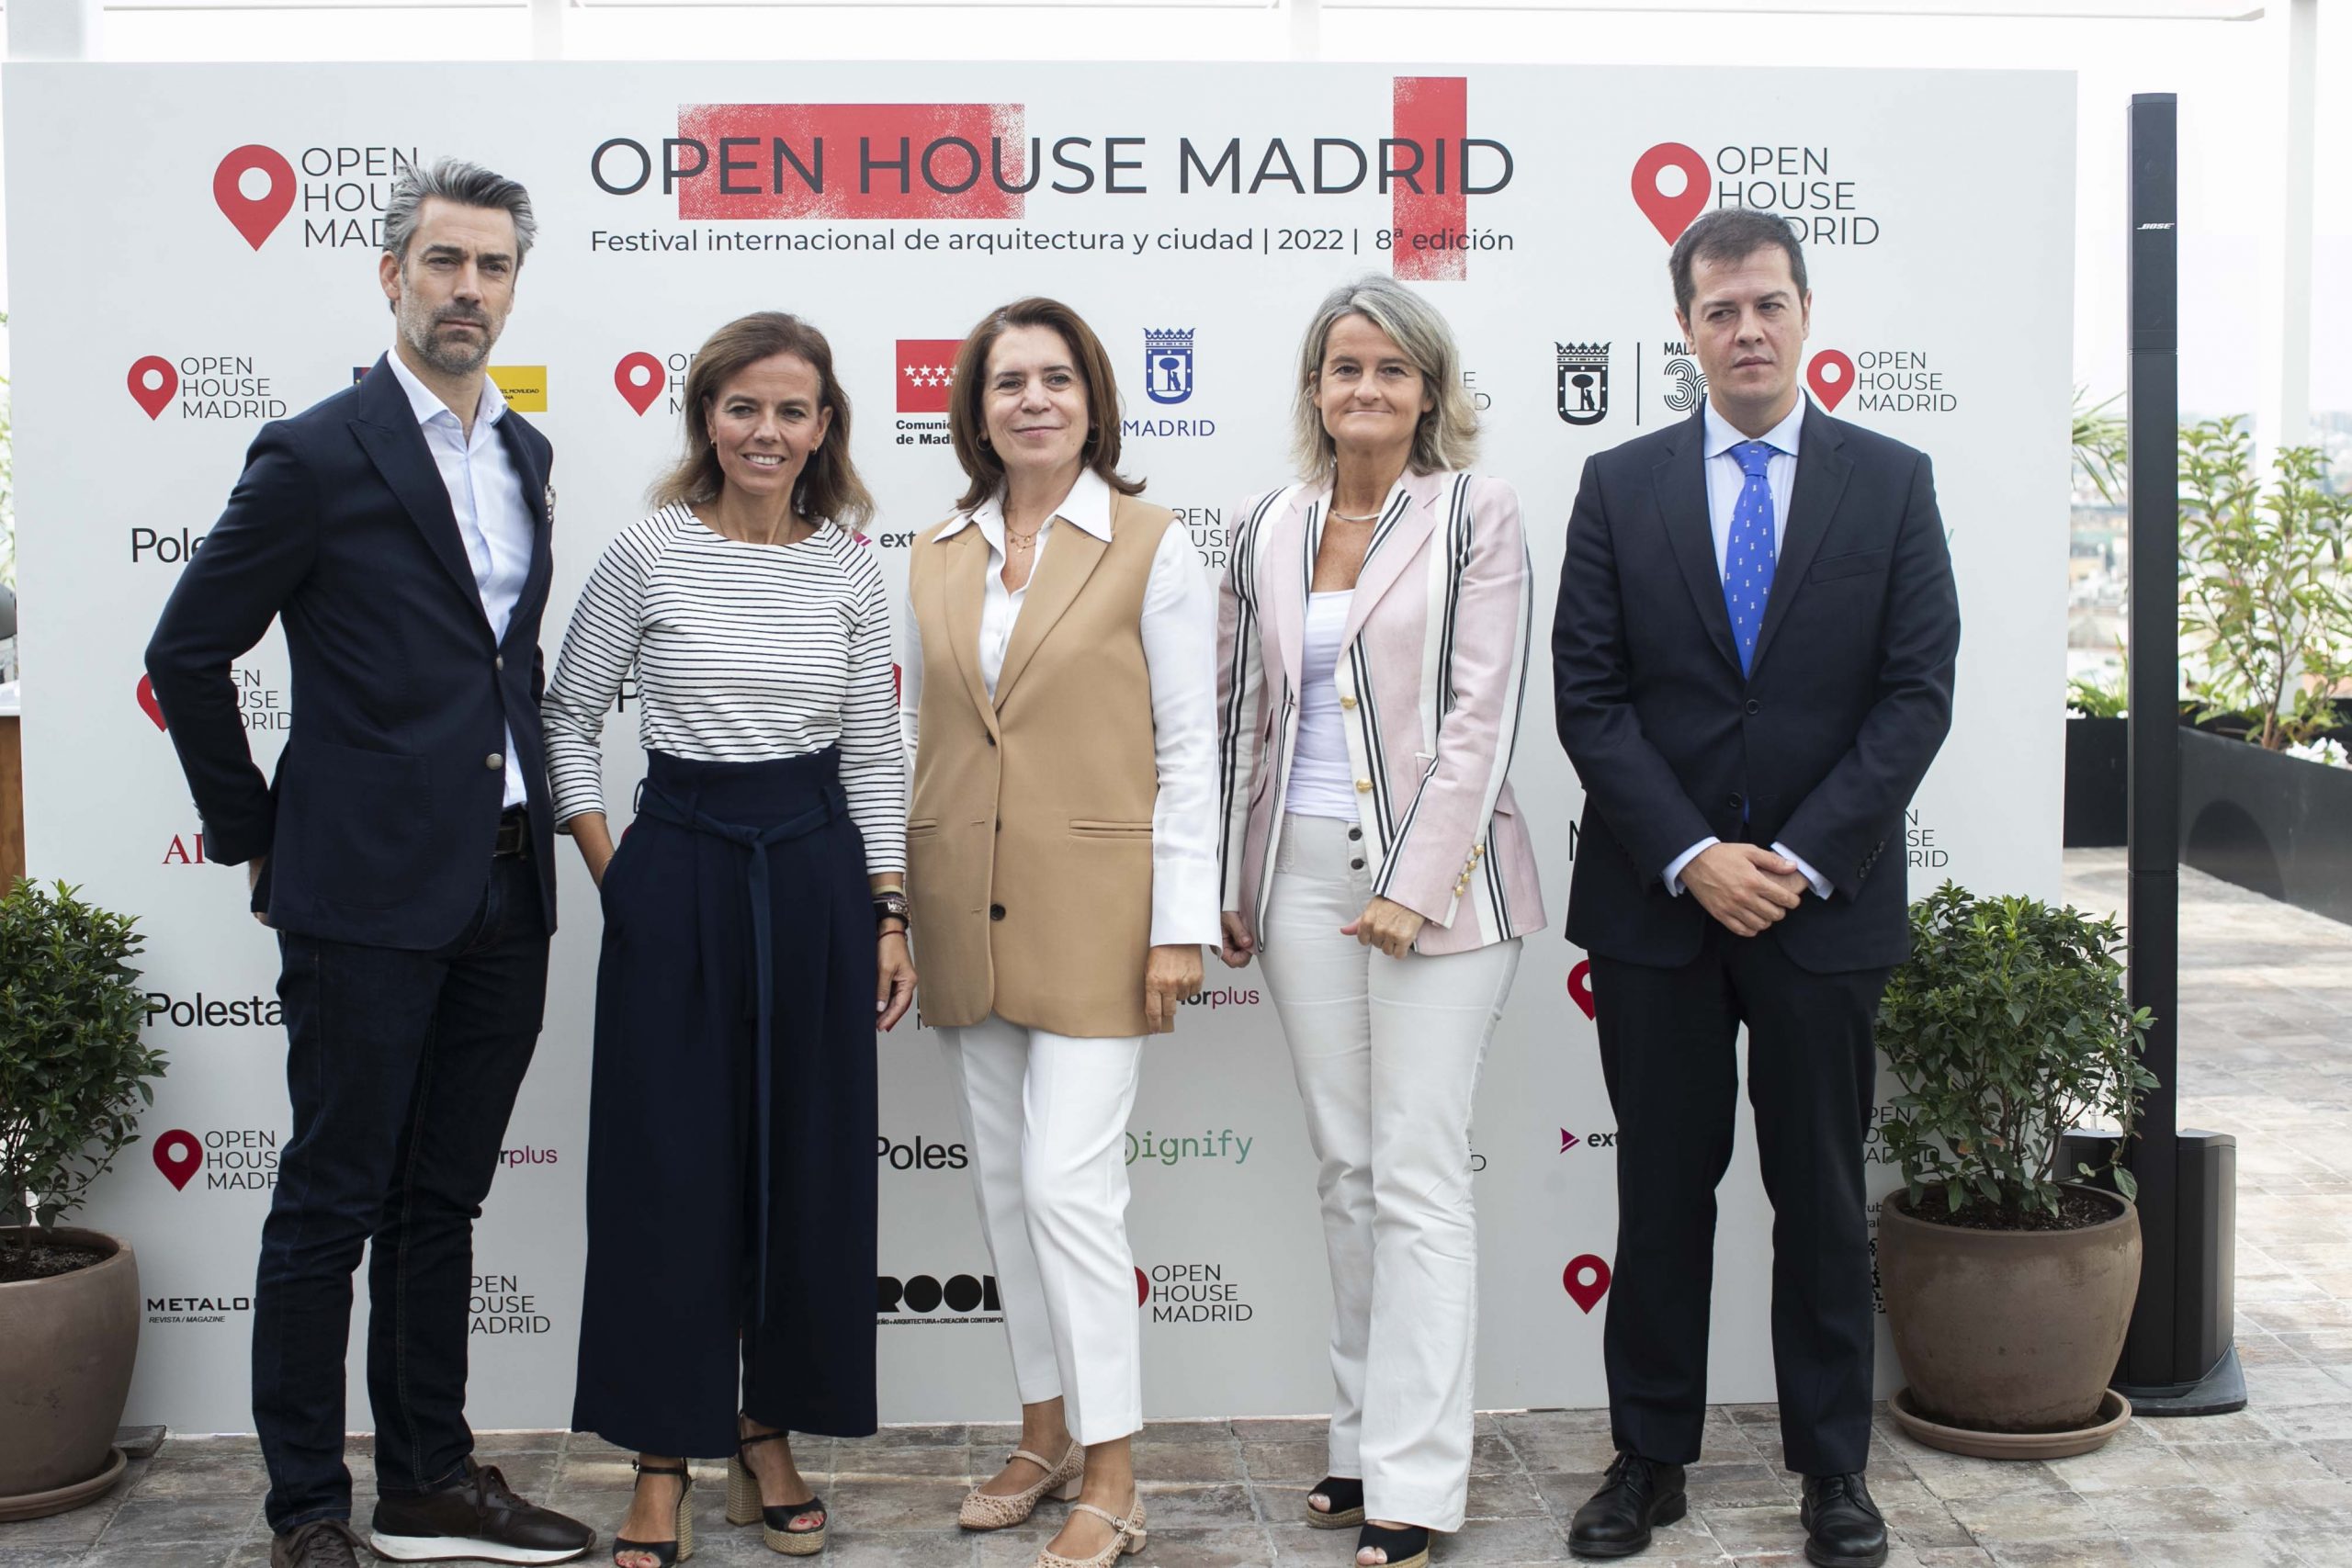 Invitados al Open House Madrid